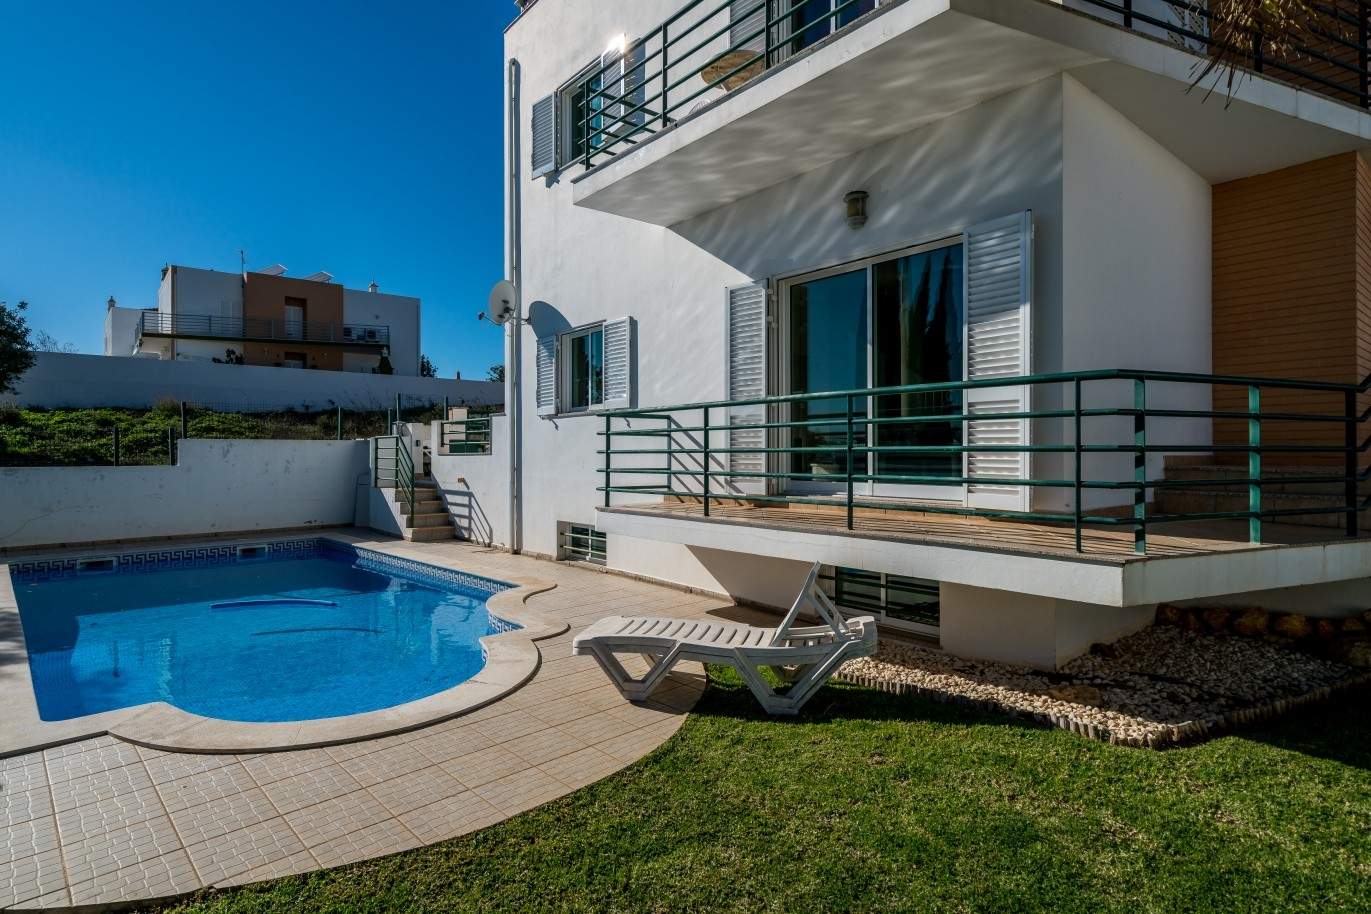 Freistehende villa zum Verkauf mit pool, in der Nähe von Strand und golf, Albufeira, Algarve, Portugal_73896